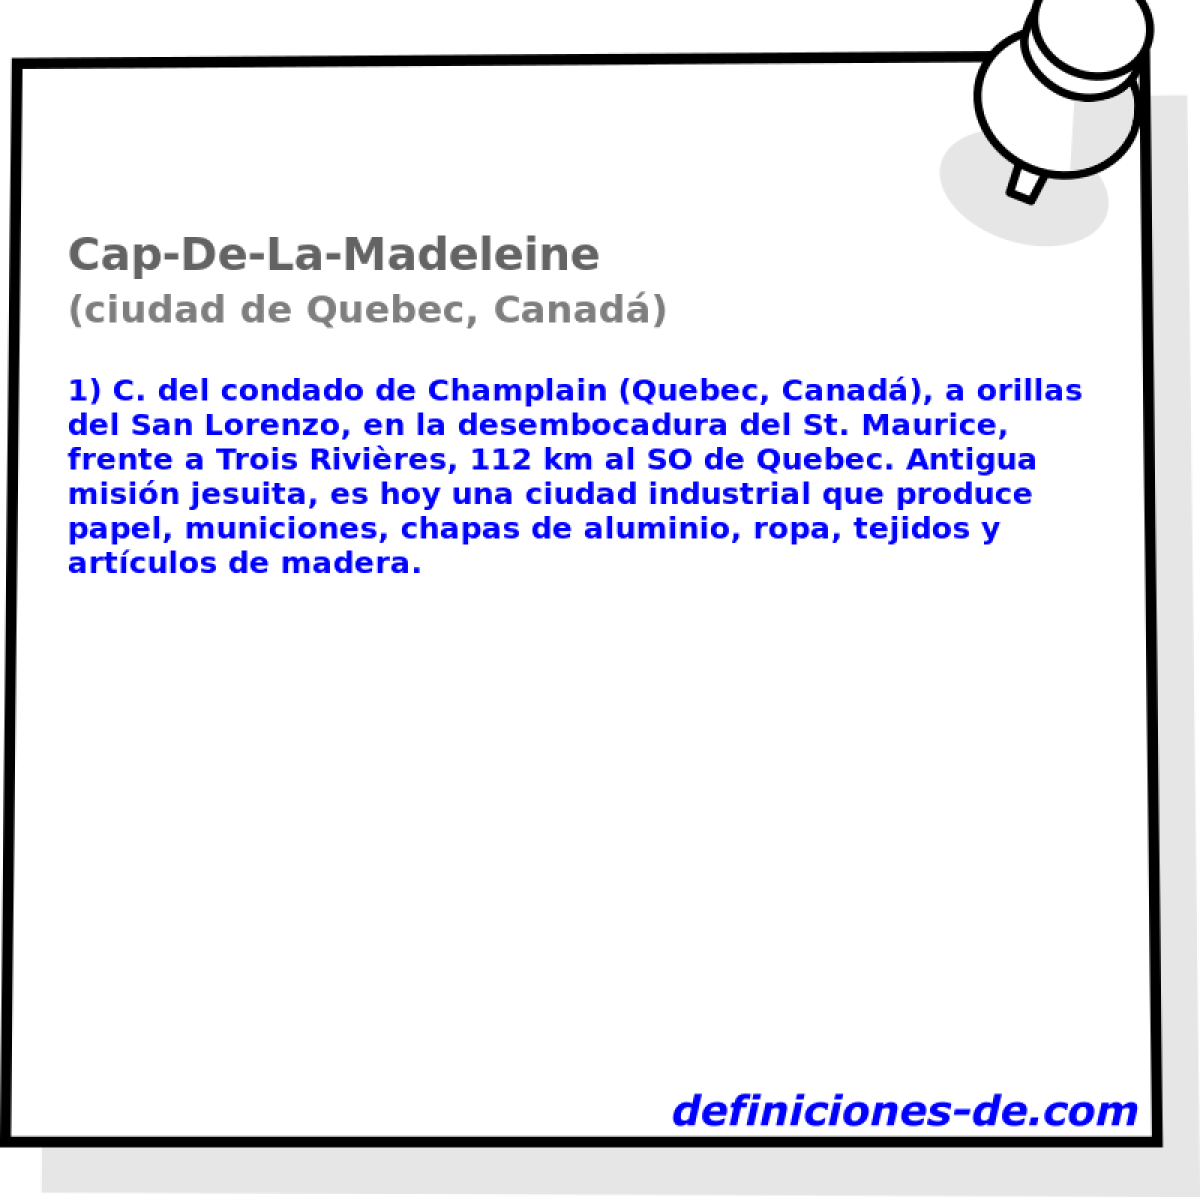 Cap-De-La-Madeleine (ciudad de Quebec, Canad)